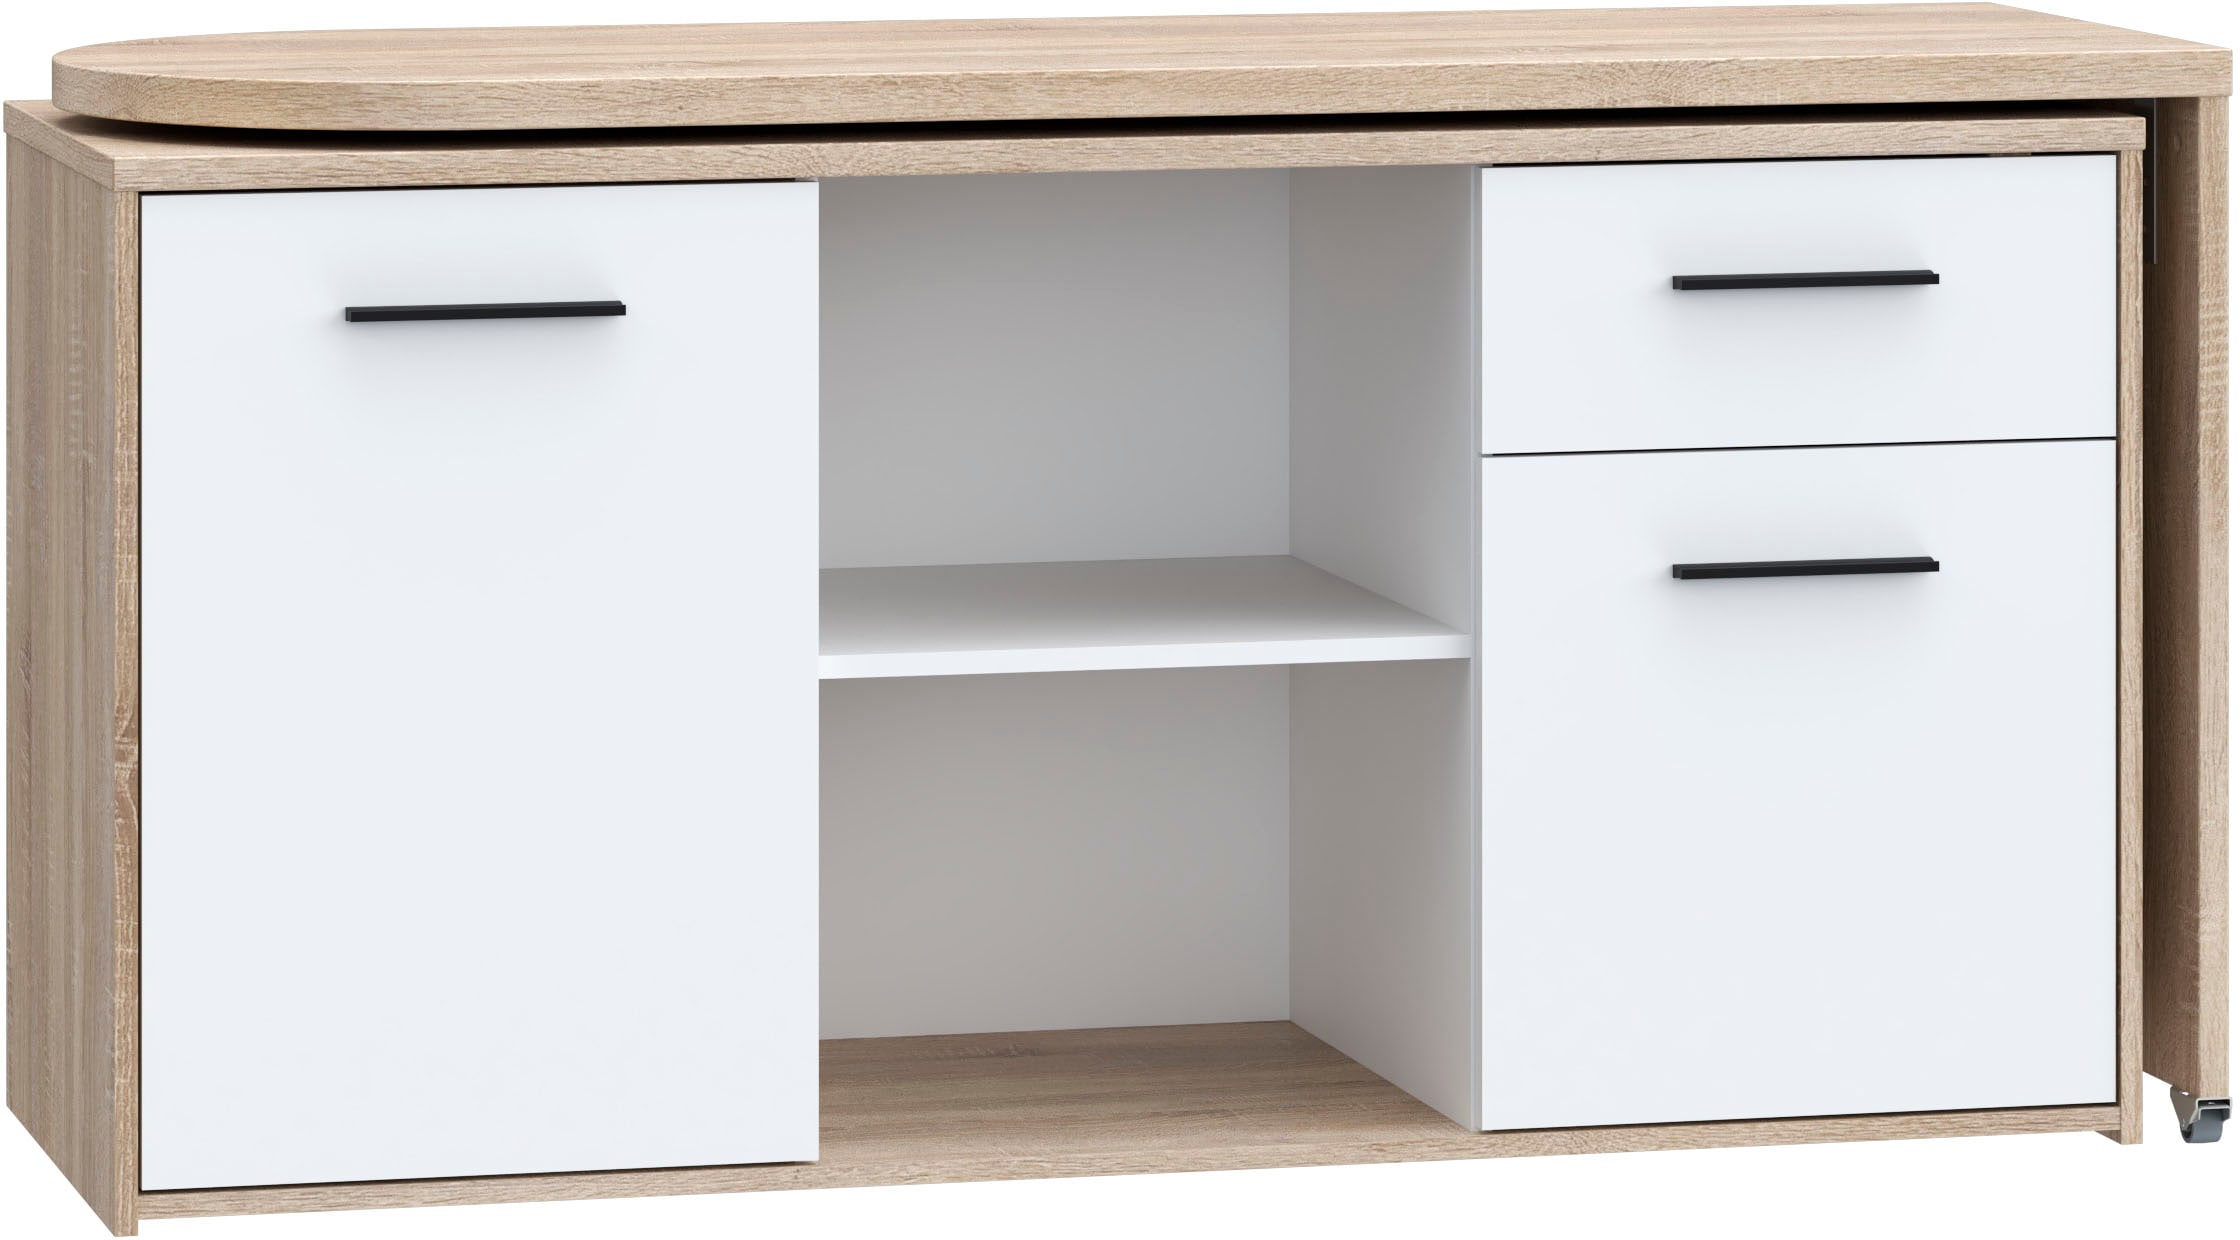 FORTE Schreibtisch »Aliklia«, multifunktional, Tischplatte ausschwenkbar,  mit Rollen, Sideboard kaufen bei OTTO